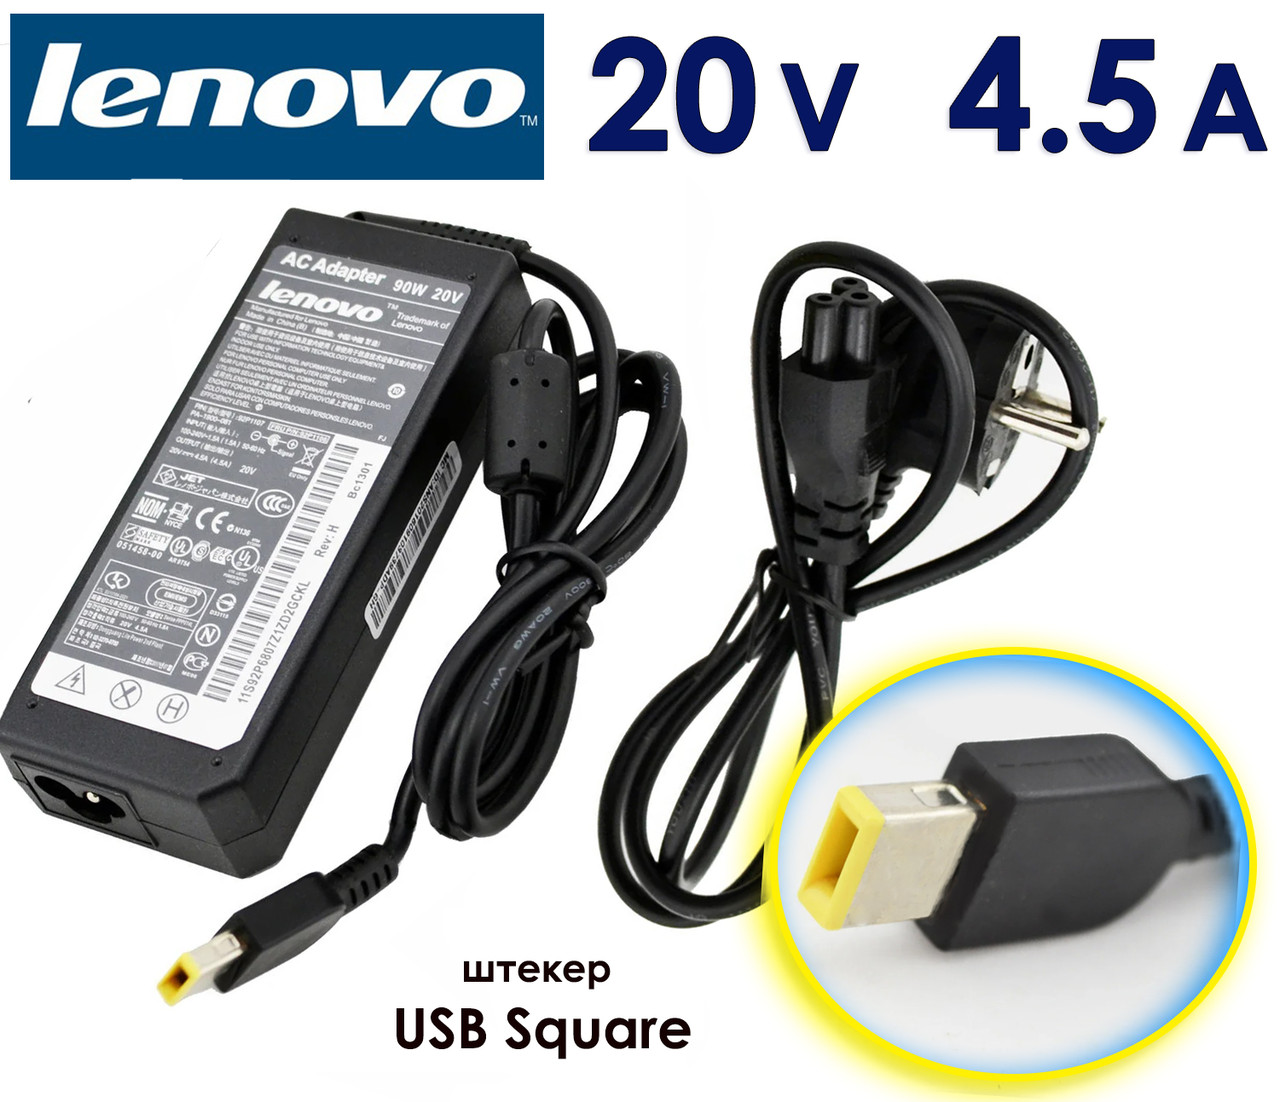 Зарядний пристрій Lenovo G700 20V 4.5A 90W USB pin Square, Блок живлення для ноутбука, зарядка, зарядне